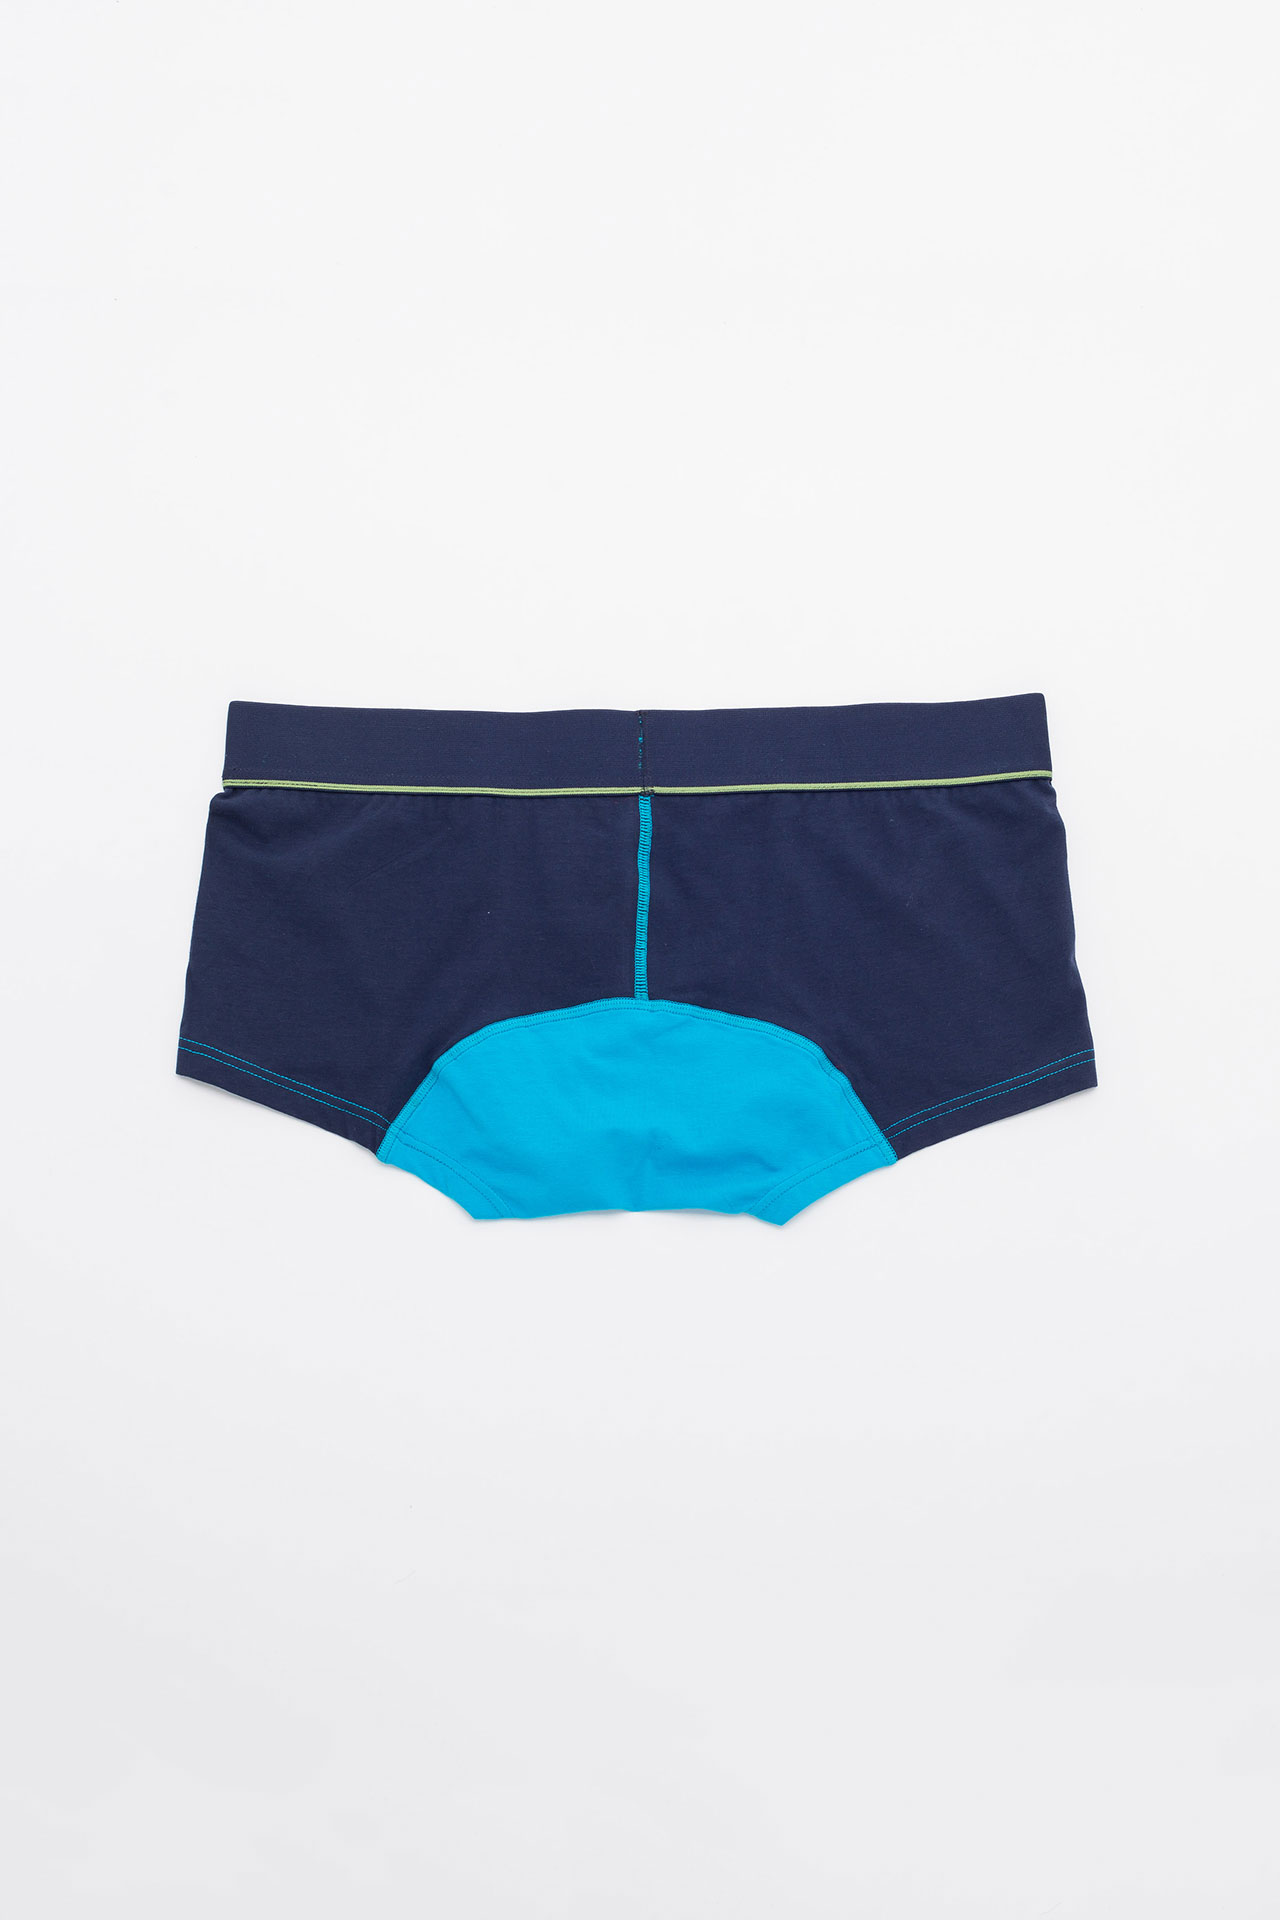 Men's Low Rise Contour Pouch Trunks Briefs Underwear | Reckon Mens ...